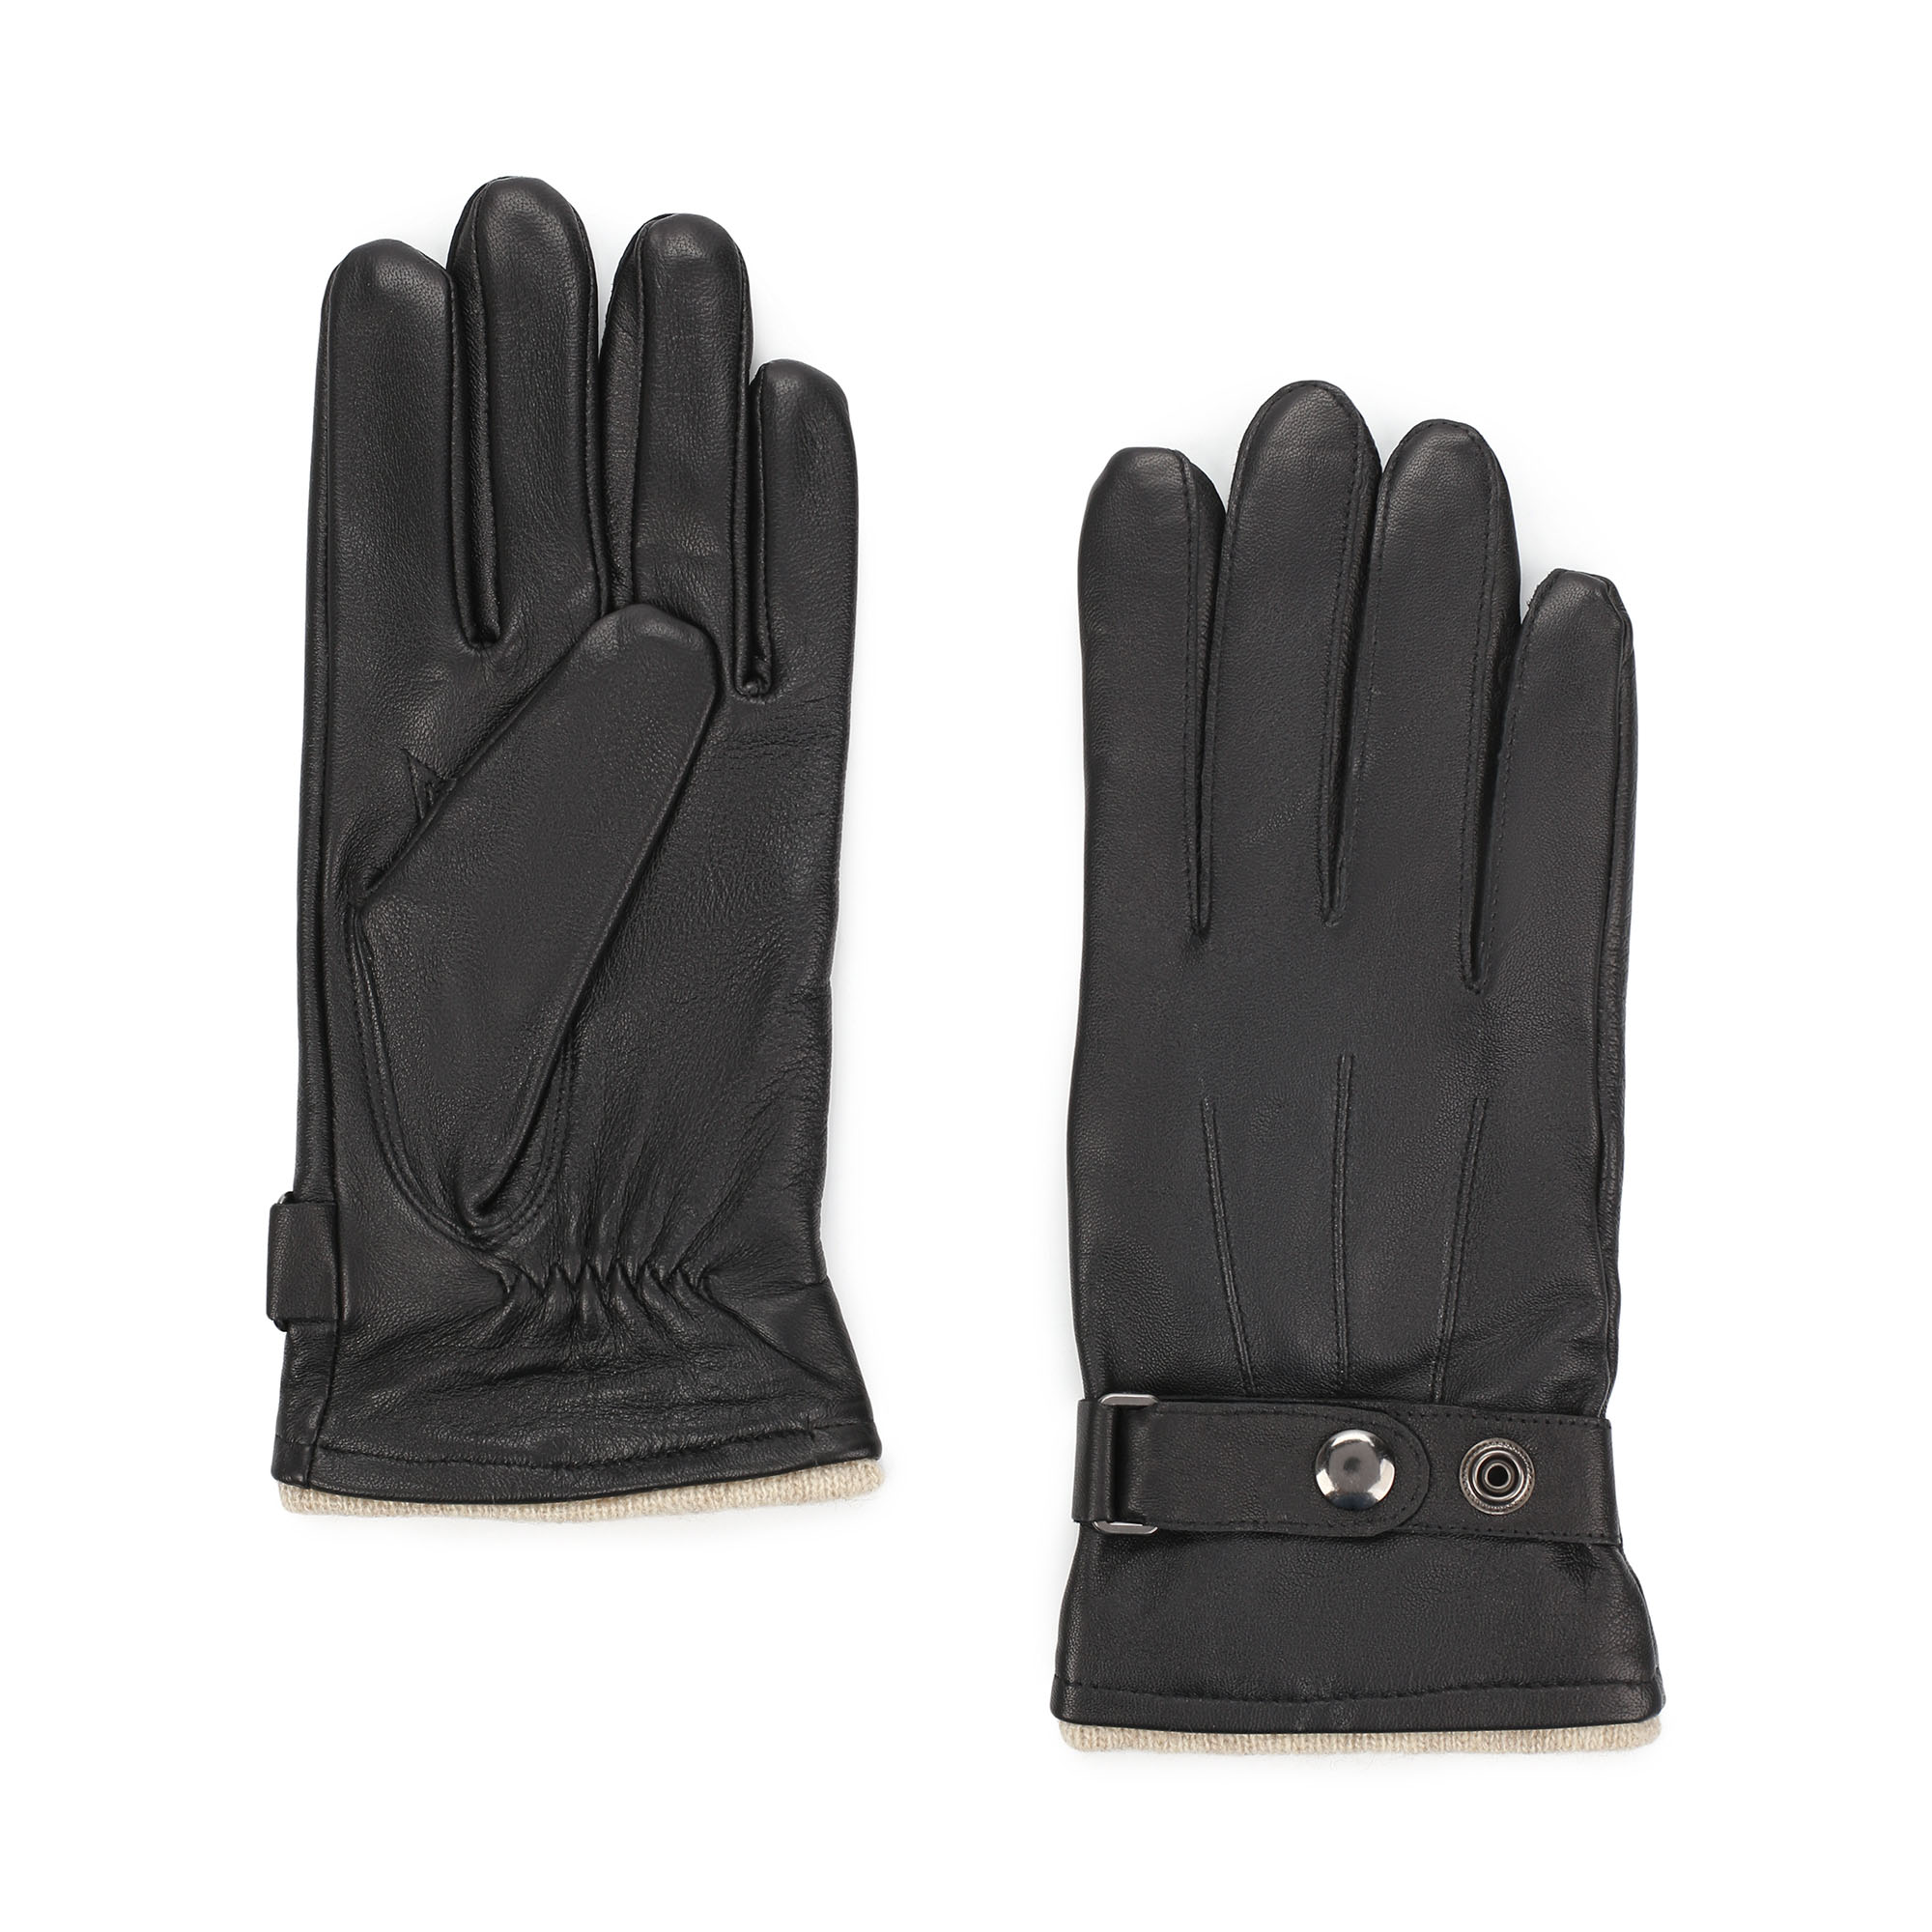 Перчатки Thomas Munz 707-82G-1801, цвет черный, размер 8.5